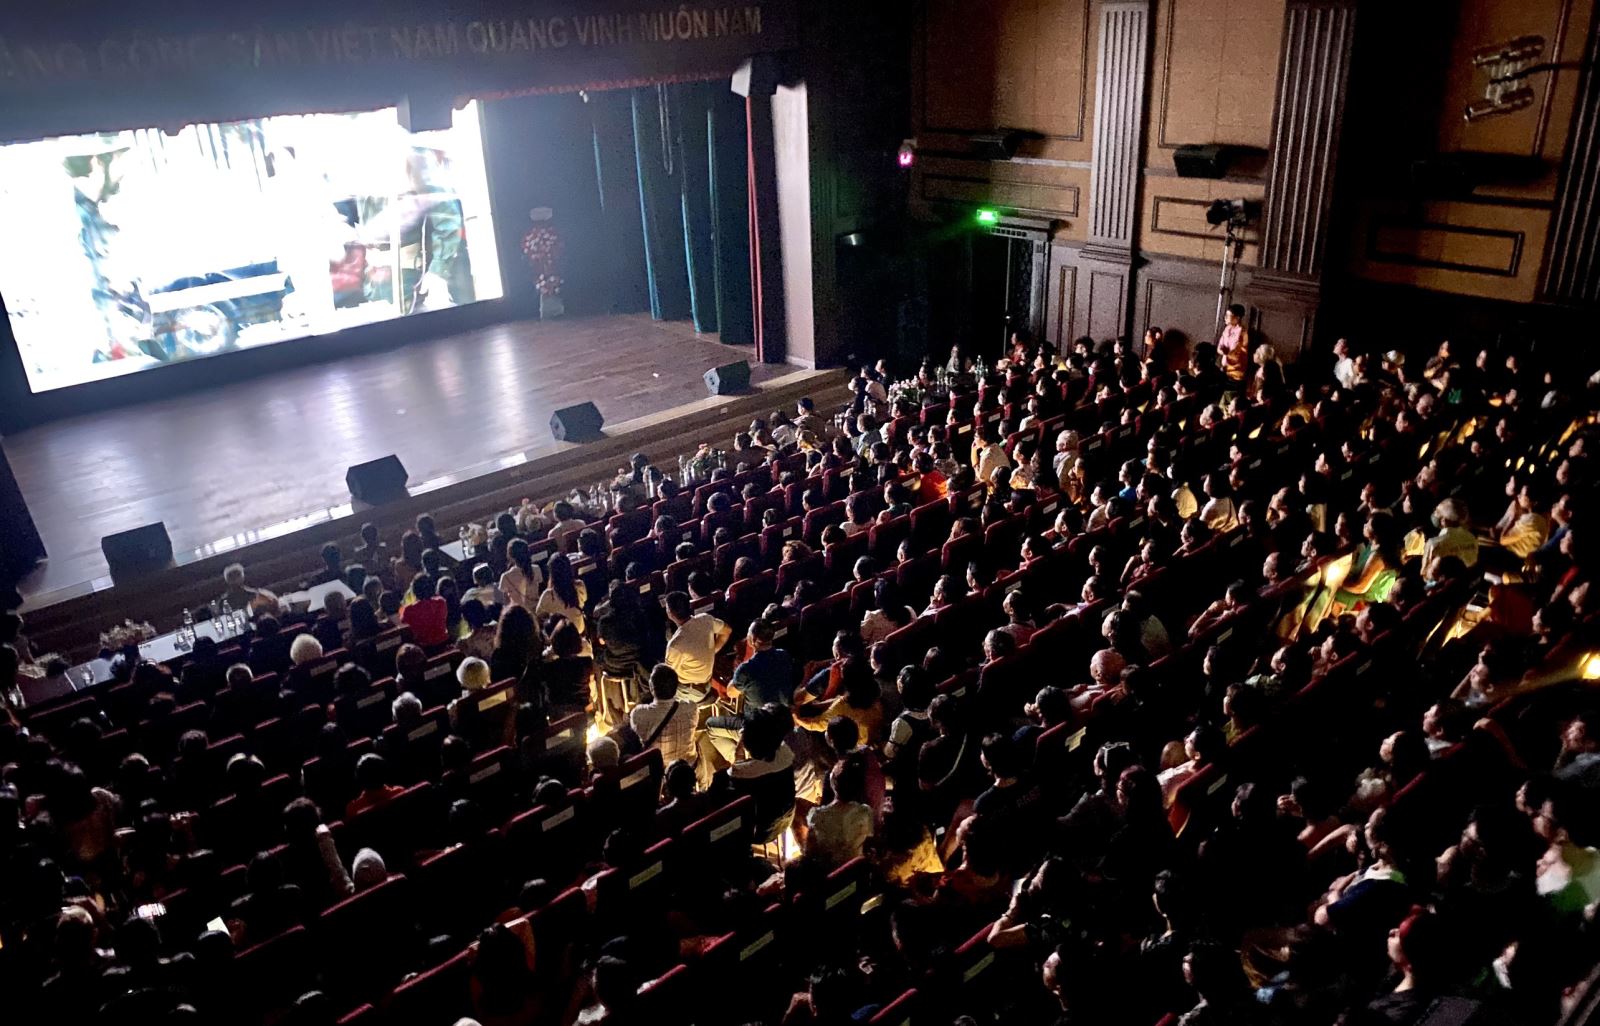 Tuần phim Kỷ niệm 70 năm Chiến thắng Điện Biên Phủ thu hút đông đảo khán giả Thủ đô 